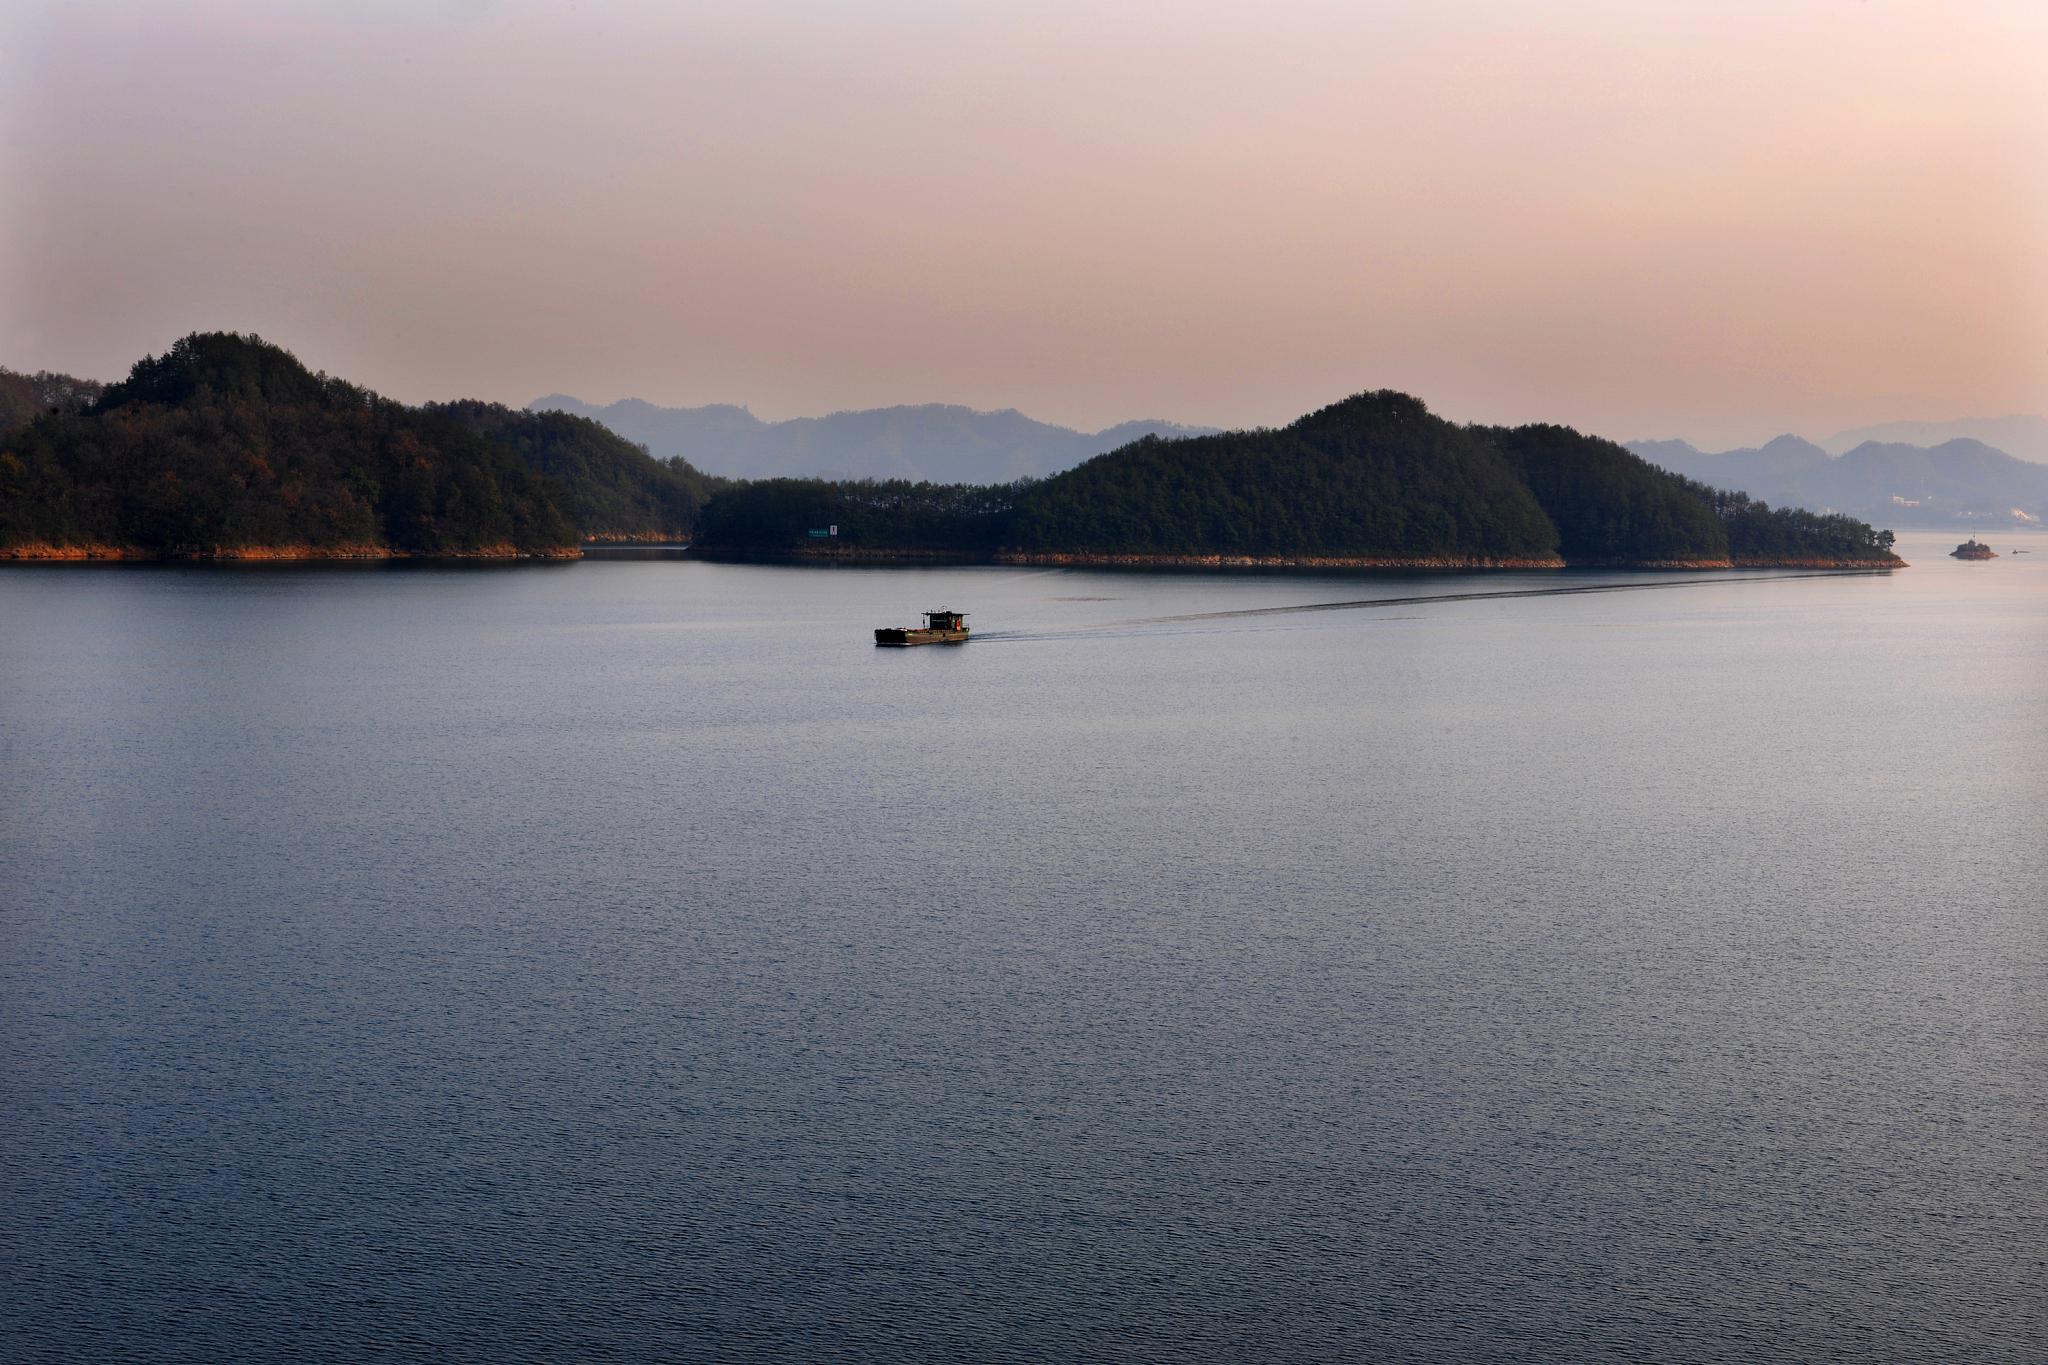 千岛湖:天下第一秀水的人间仙境